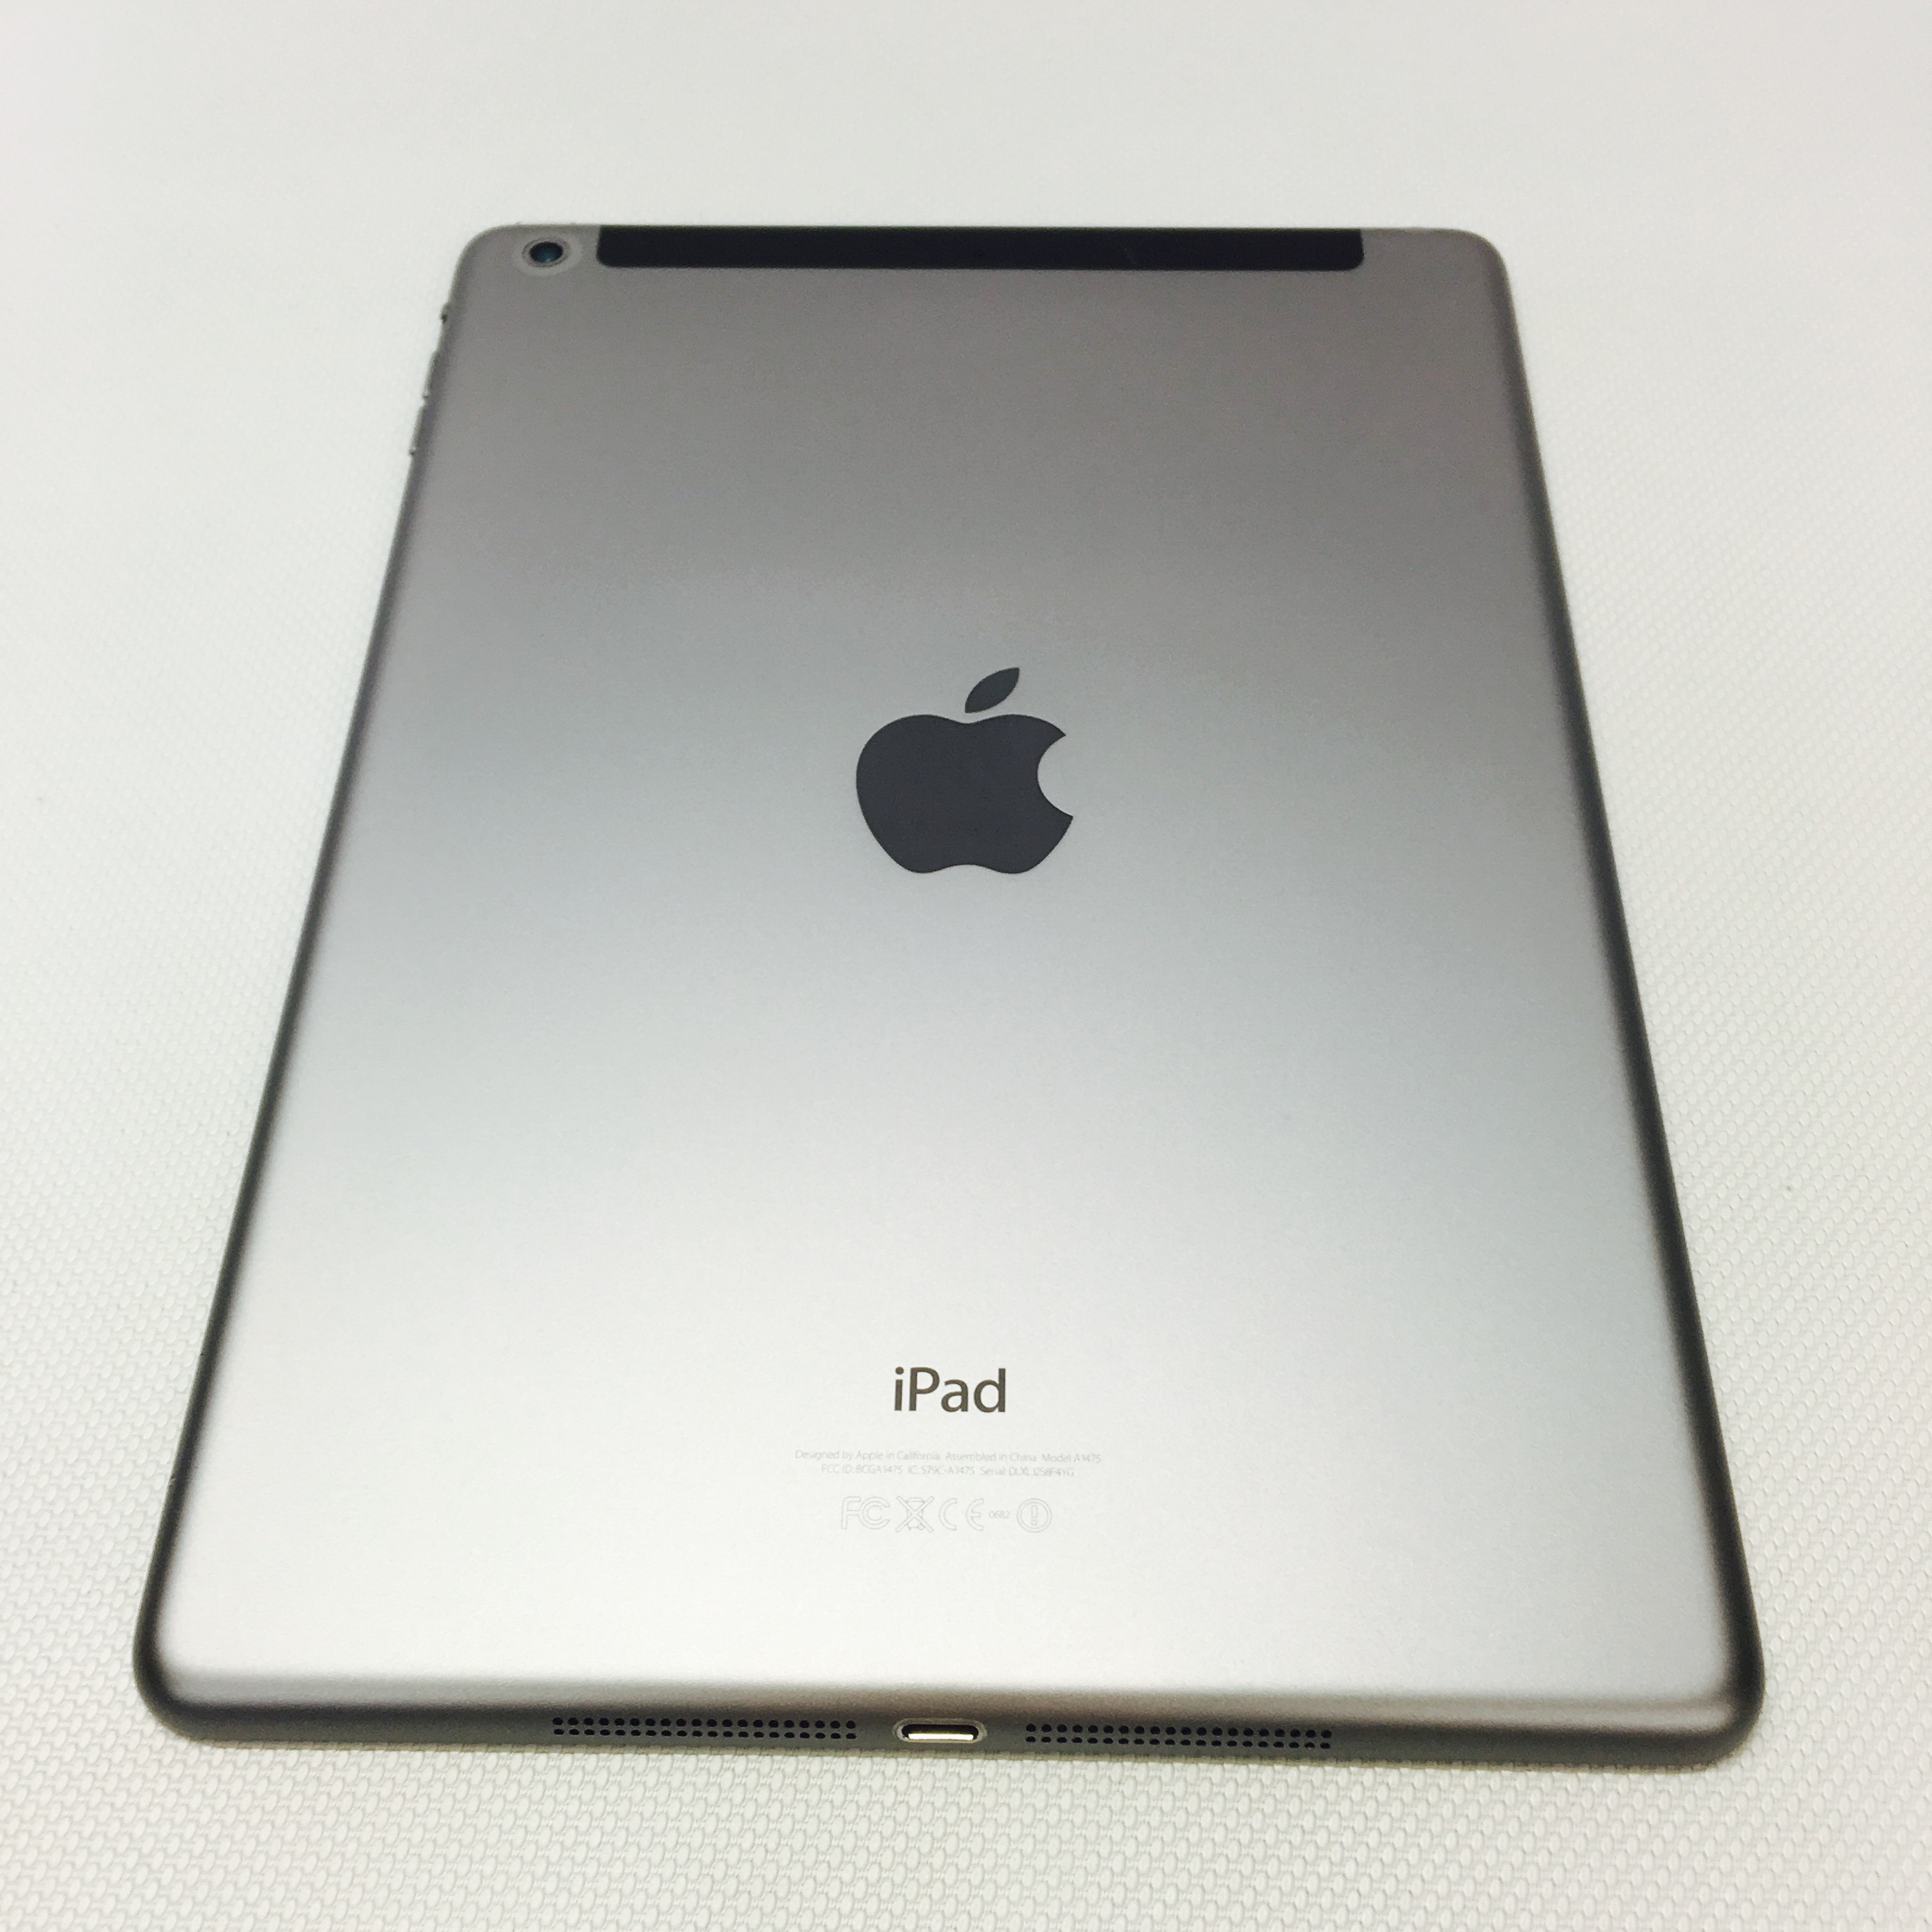 Fully Refurbished iPad Air 64GB Space Grey WiFi, Cellular 64GB / GRAY